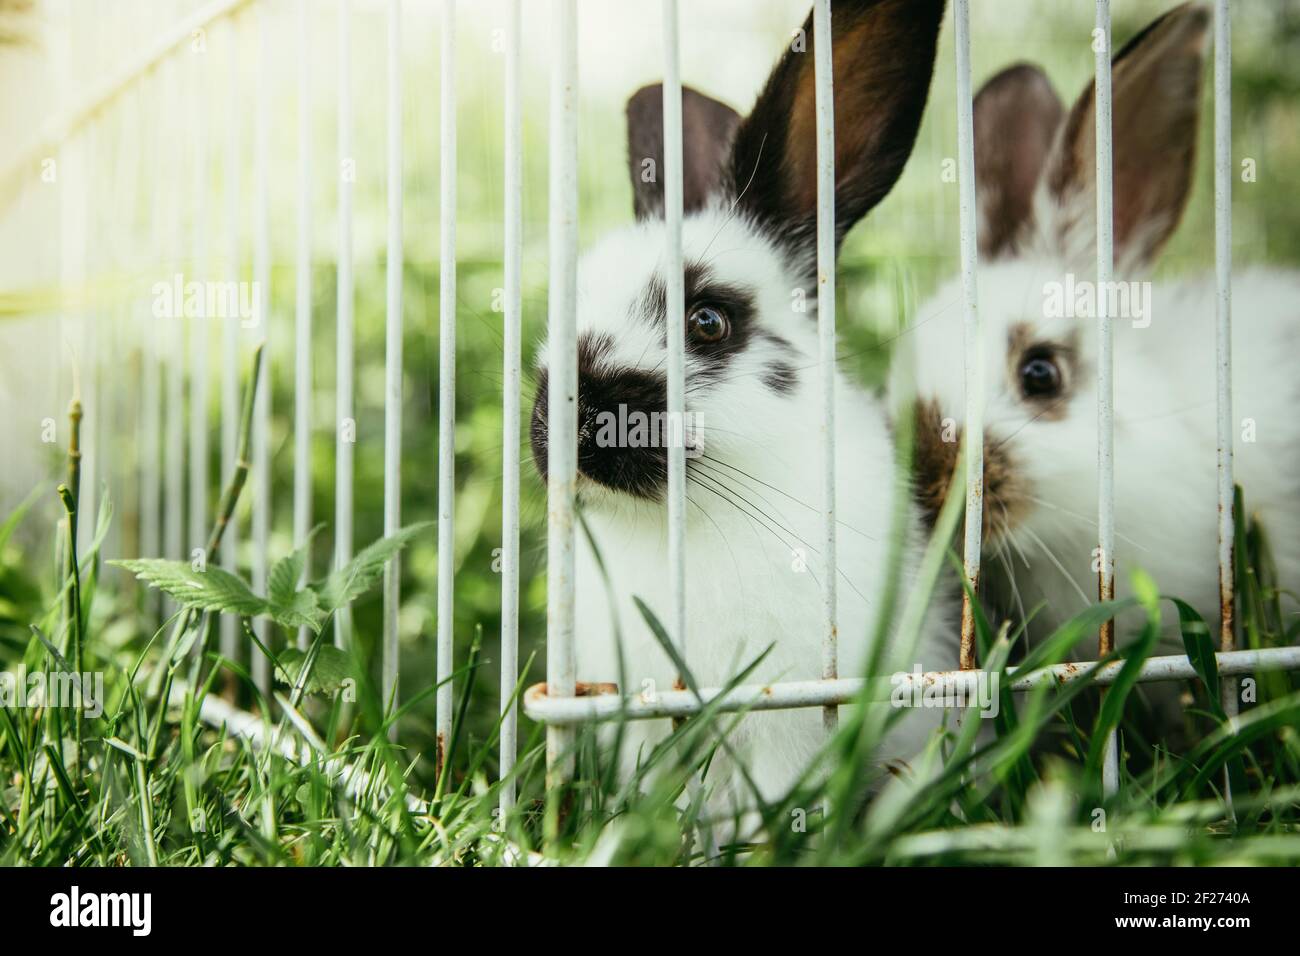 Cute little bunnies in an outdoor compound, green grass, summertime Stock Photo